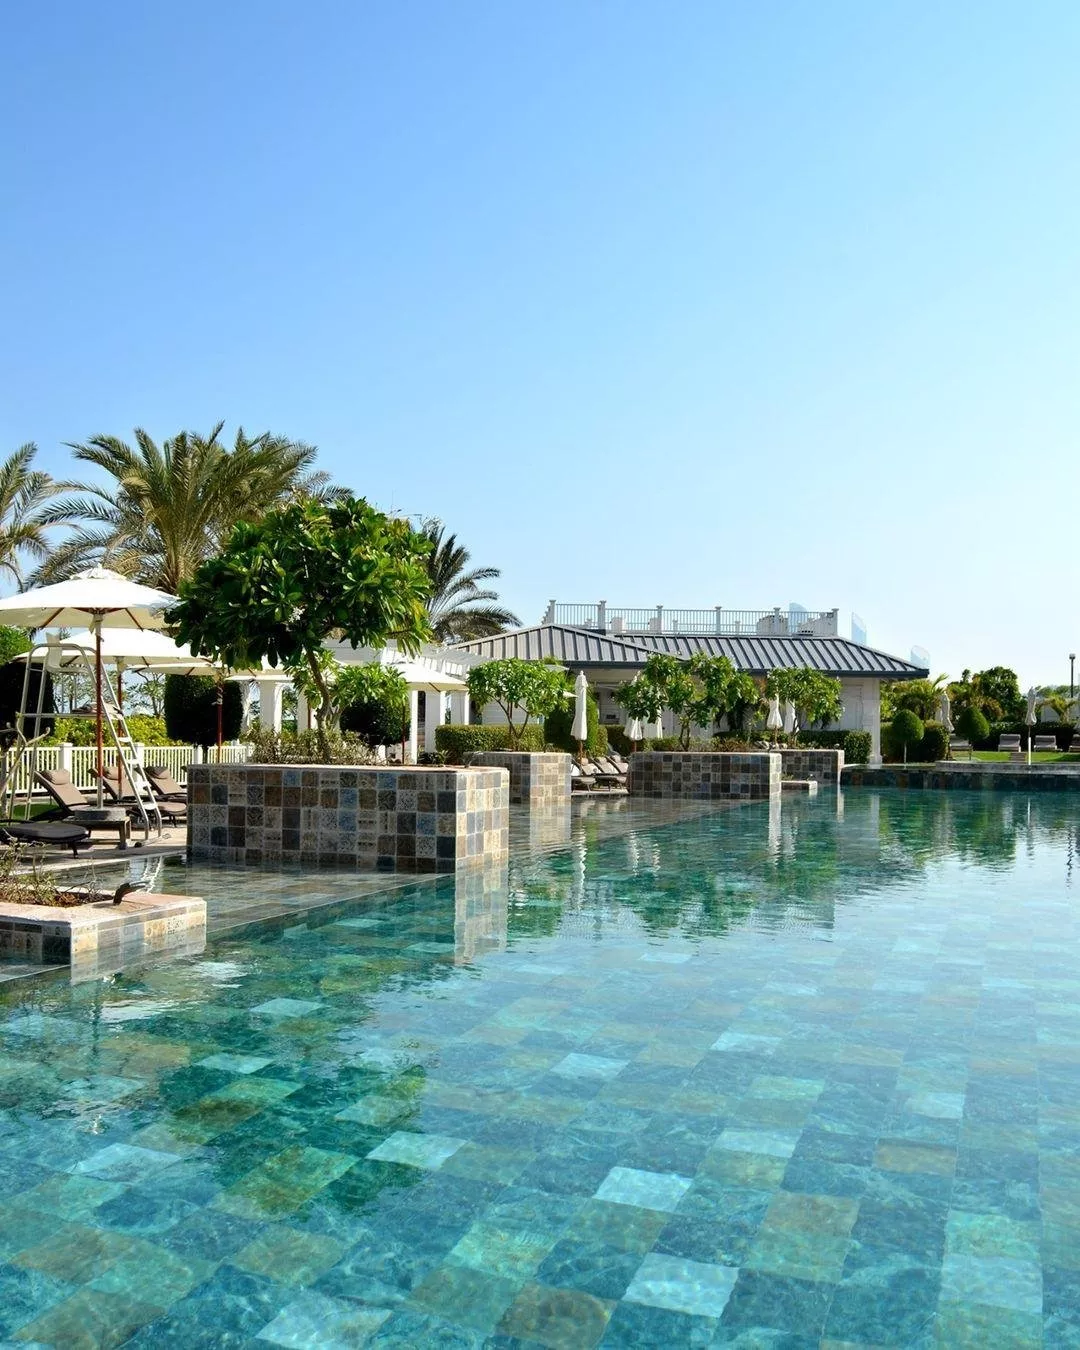 أفضل 10 منتجعات عائلية في دبي وأبو ظبي لقضاء عطلة مع أسرتكِ